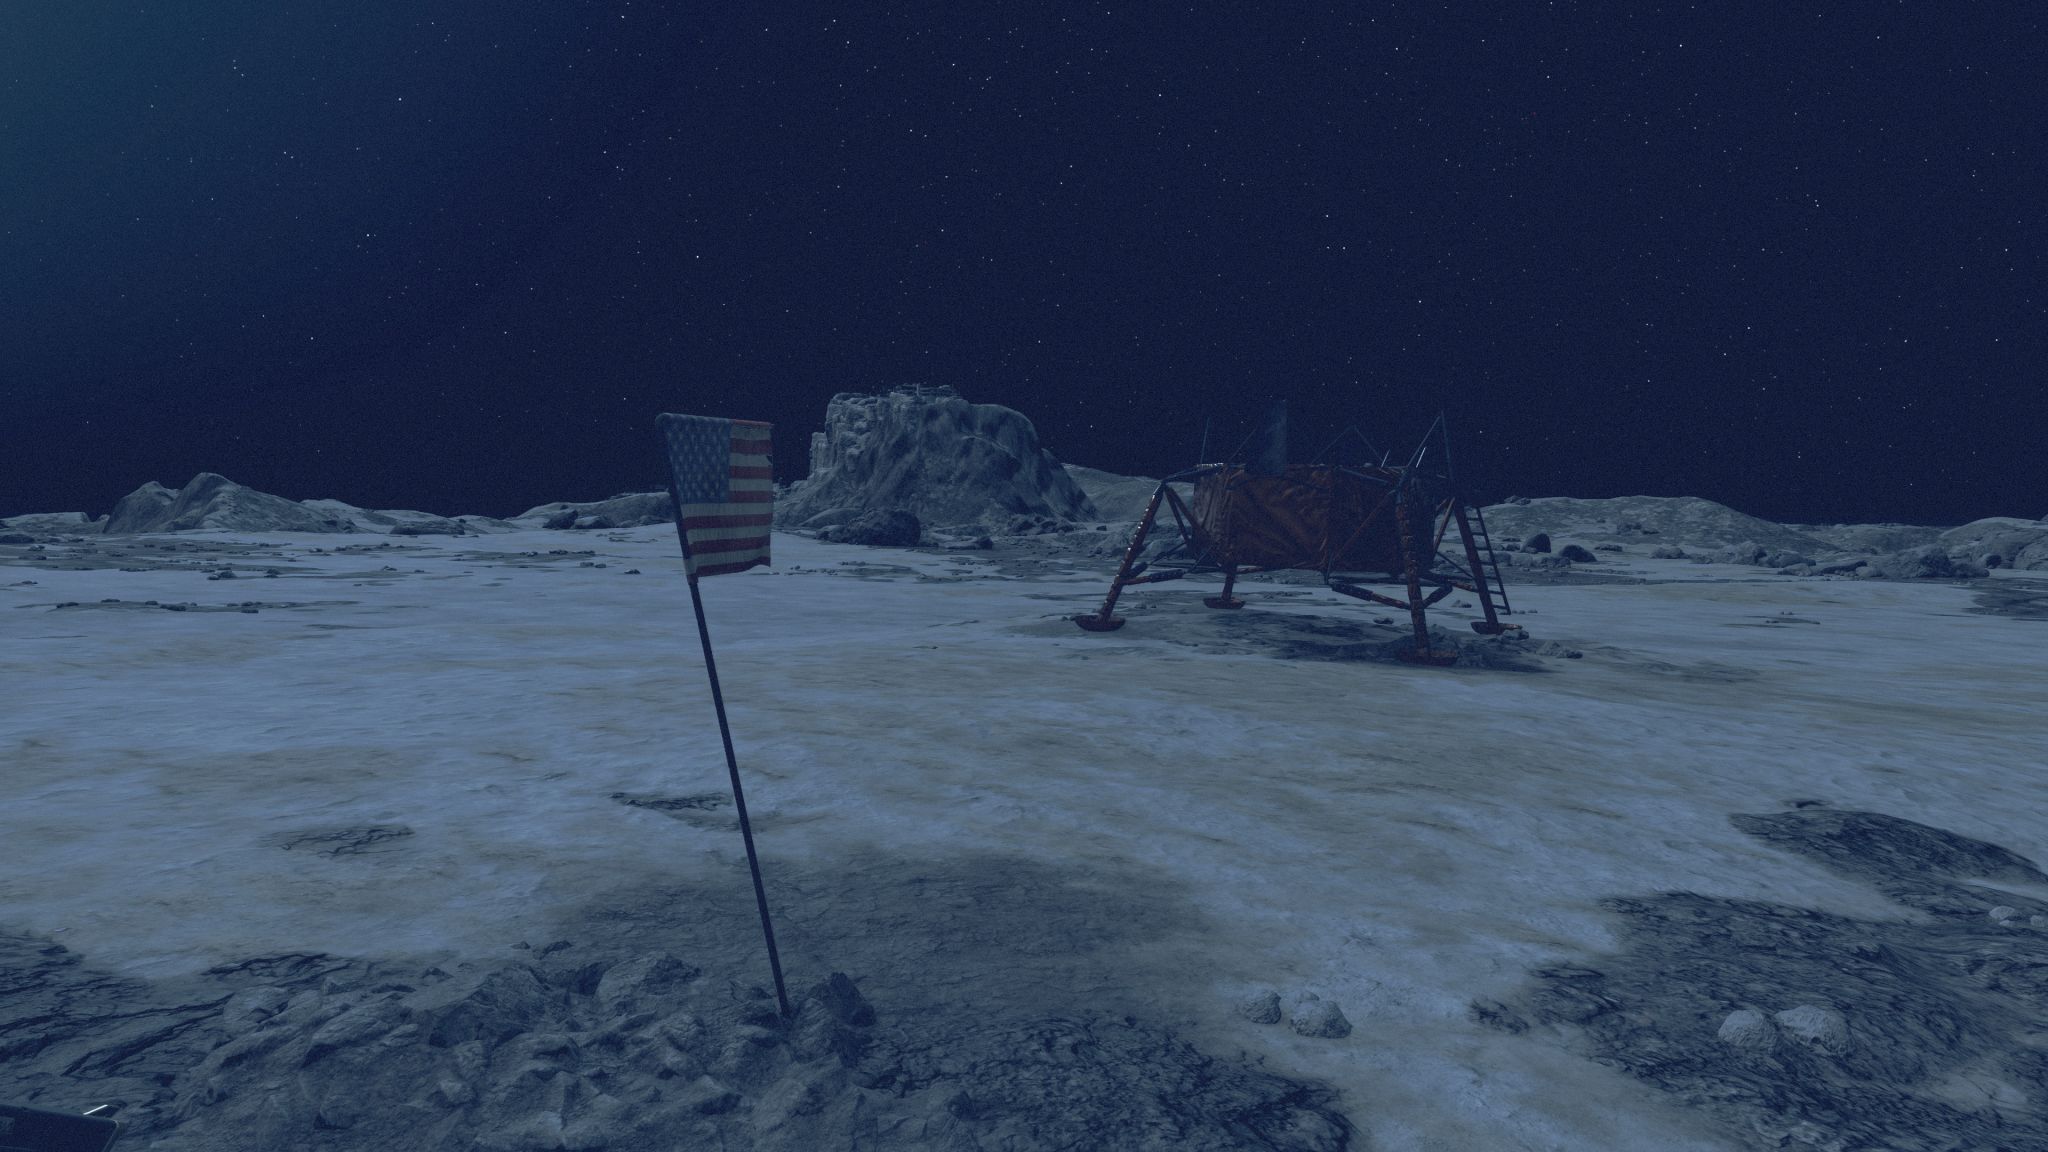 探索月球表面发现登陆舱《星空》留了彩蛋来反驳美国登月的阴谋论